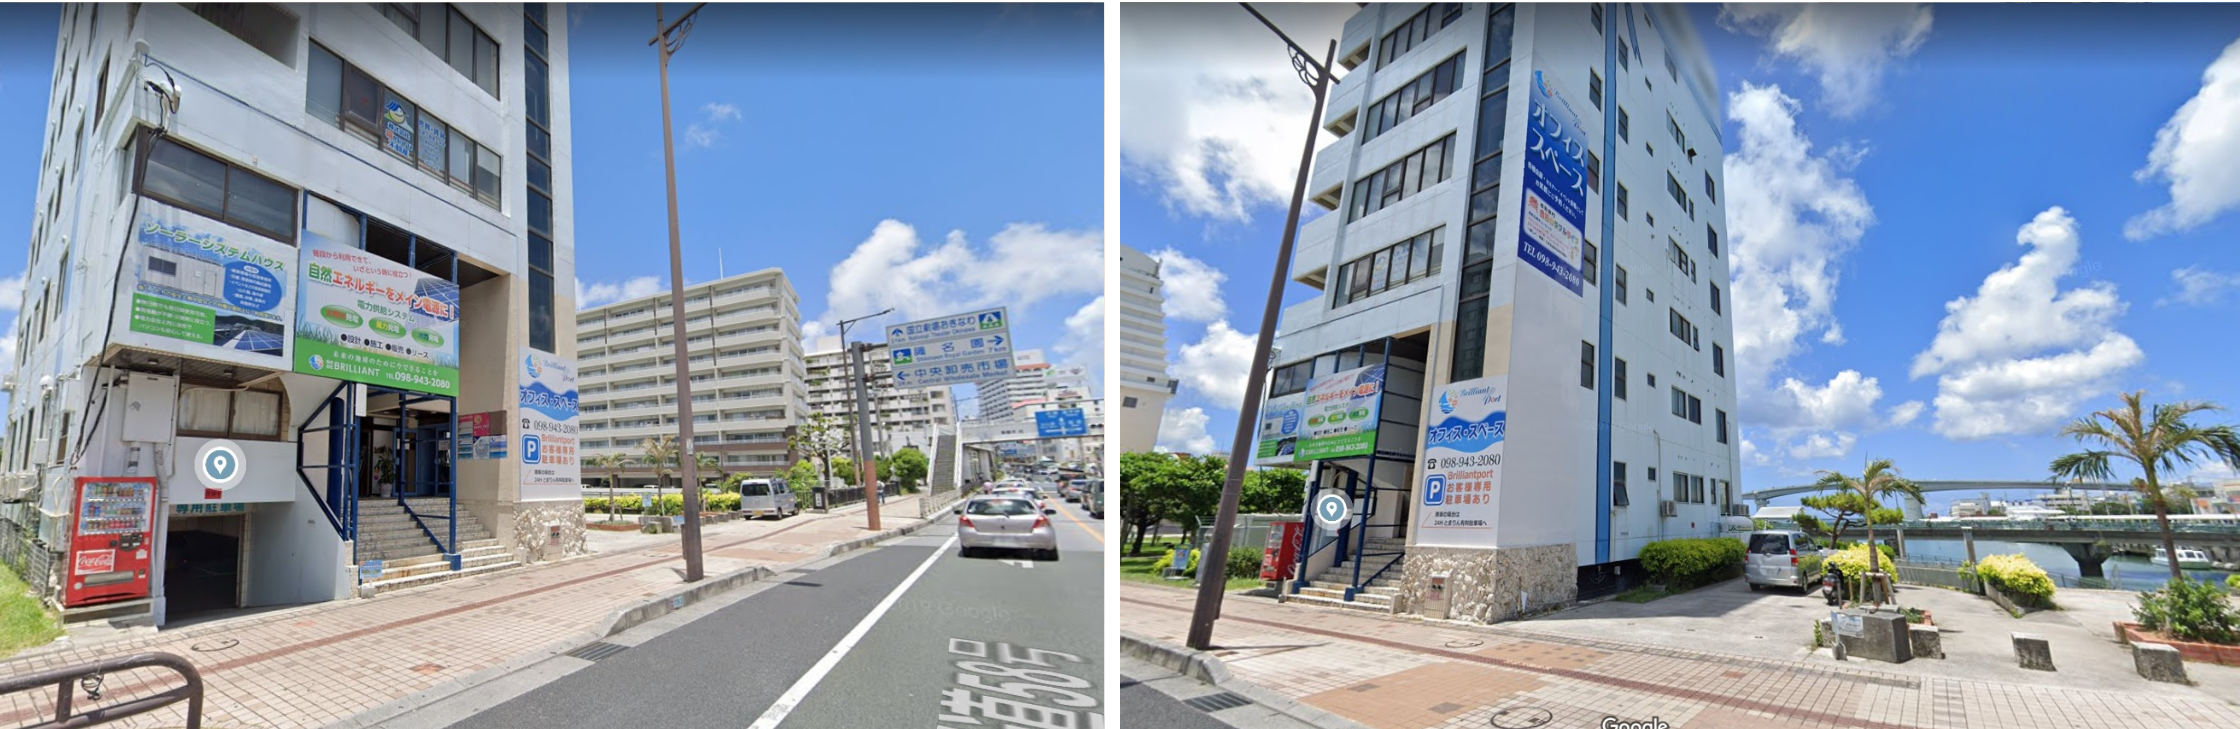 【駐車場付】沖縄県で面接会場・試験会場をお探しなら...沖縄 レンタルスペース BrilliantPortへ♪